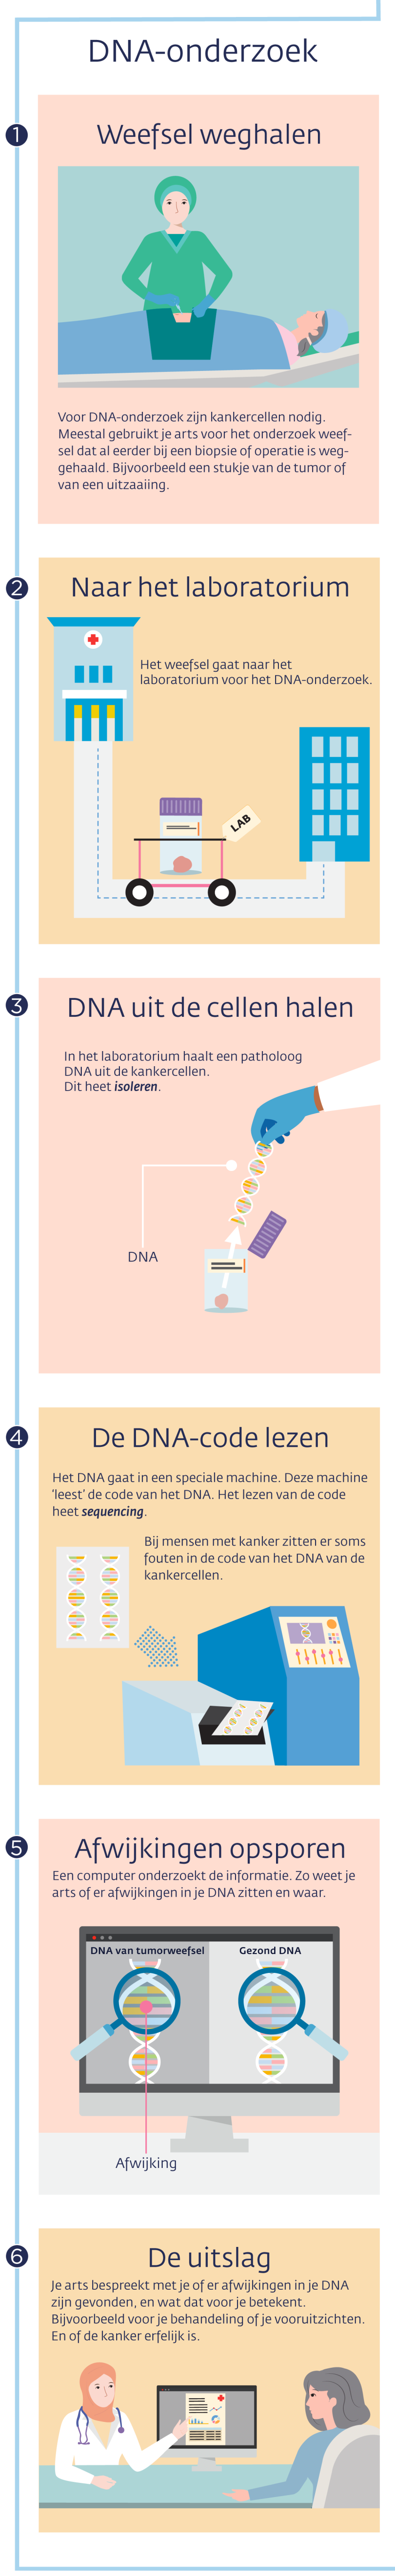 Infographic: zo gaat DNA-onderzoek bij mensen met kanker